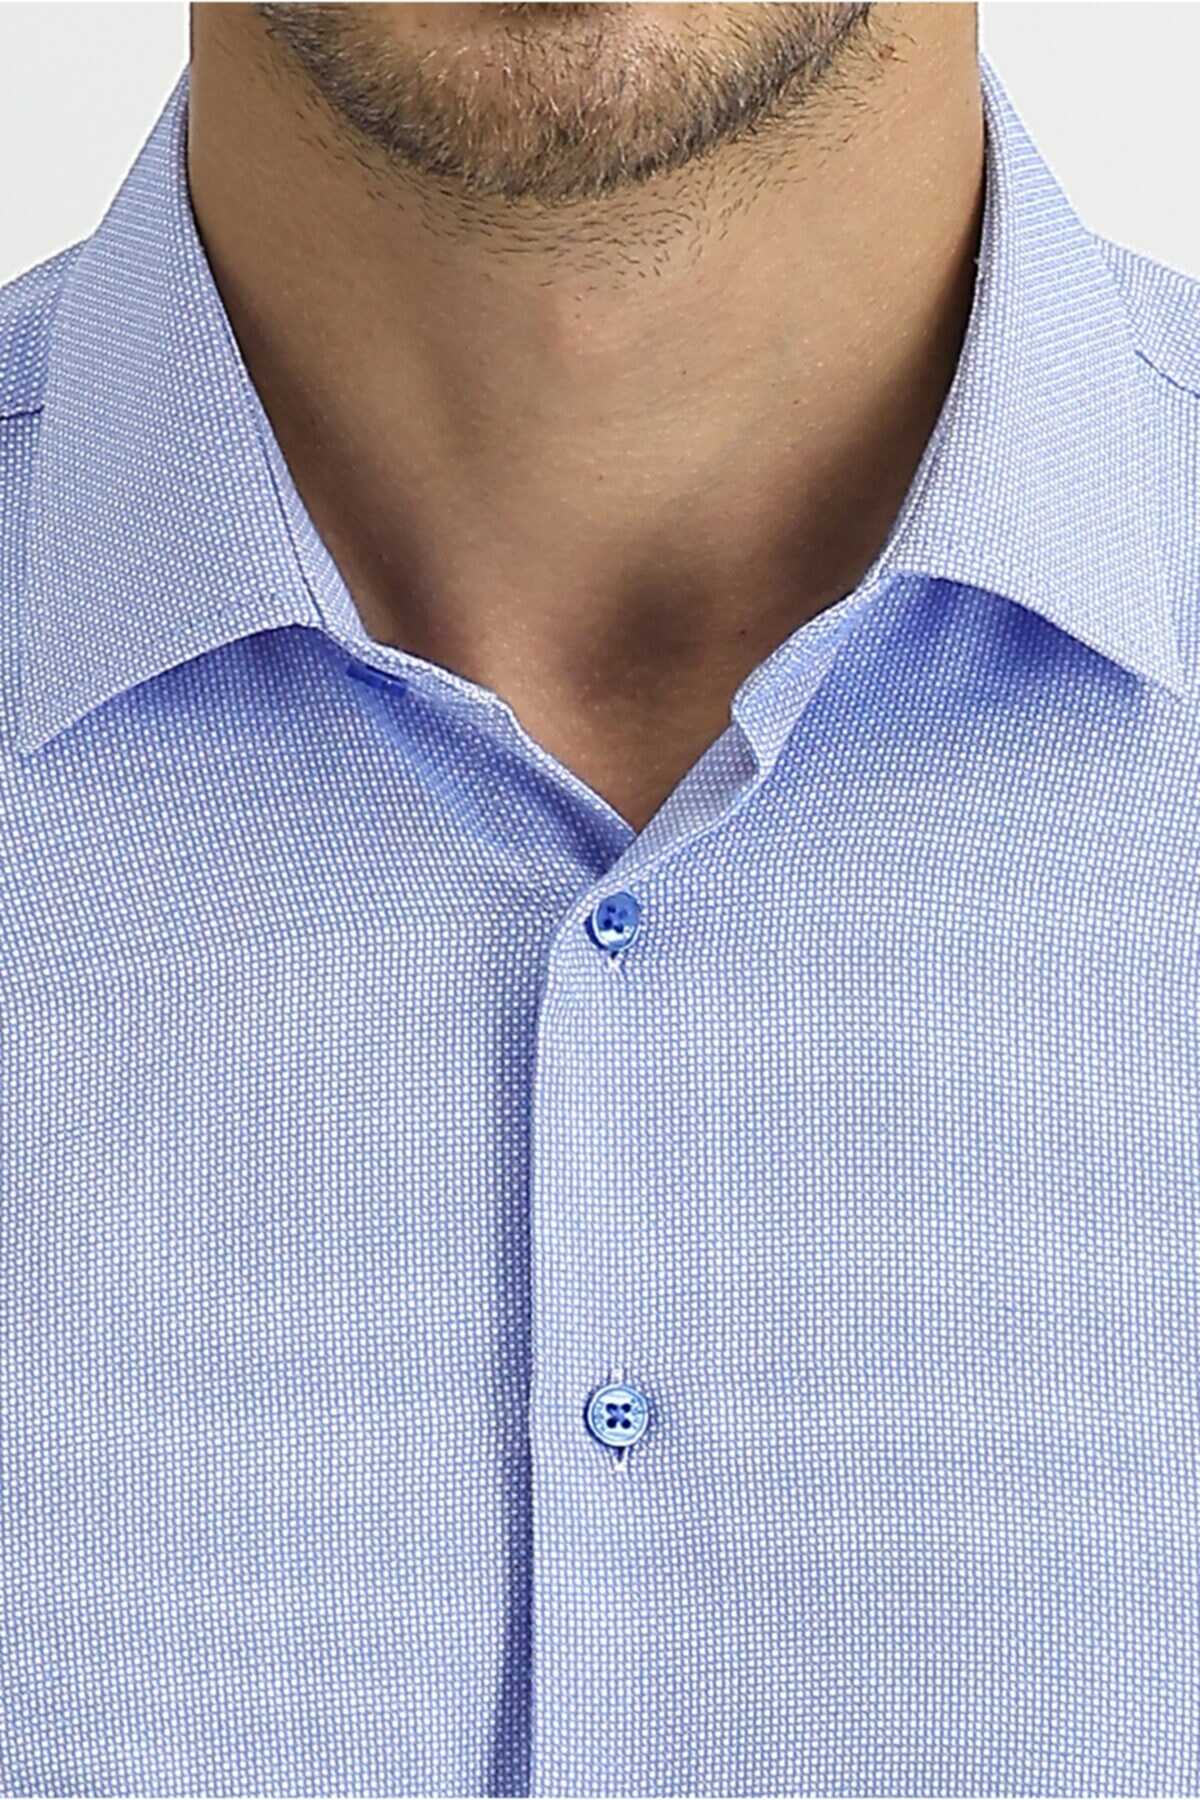 پیراهن کلاسیک آستین بلند مردانه آبی روشن برند Kiğılı 